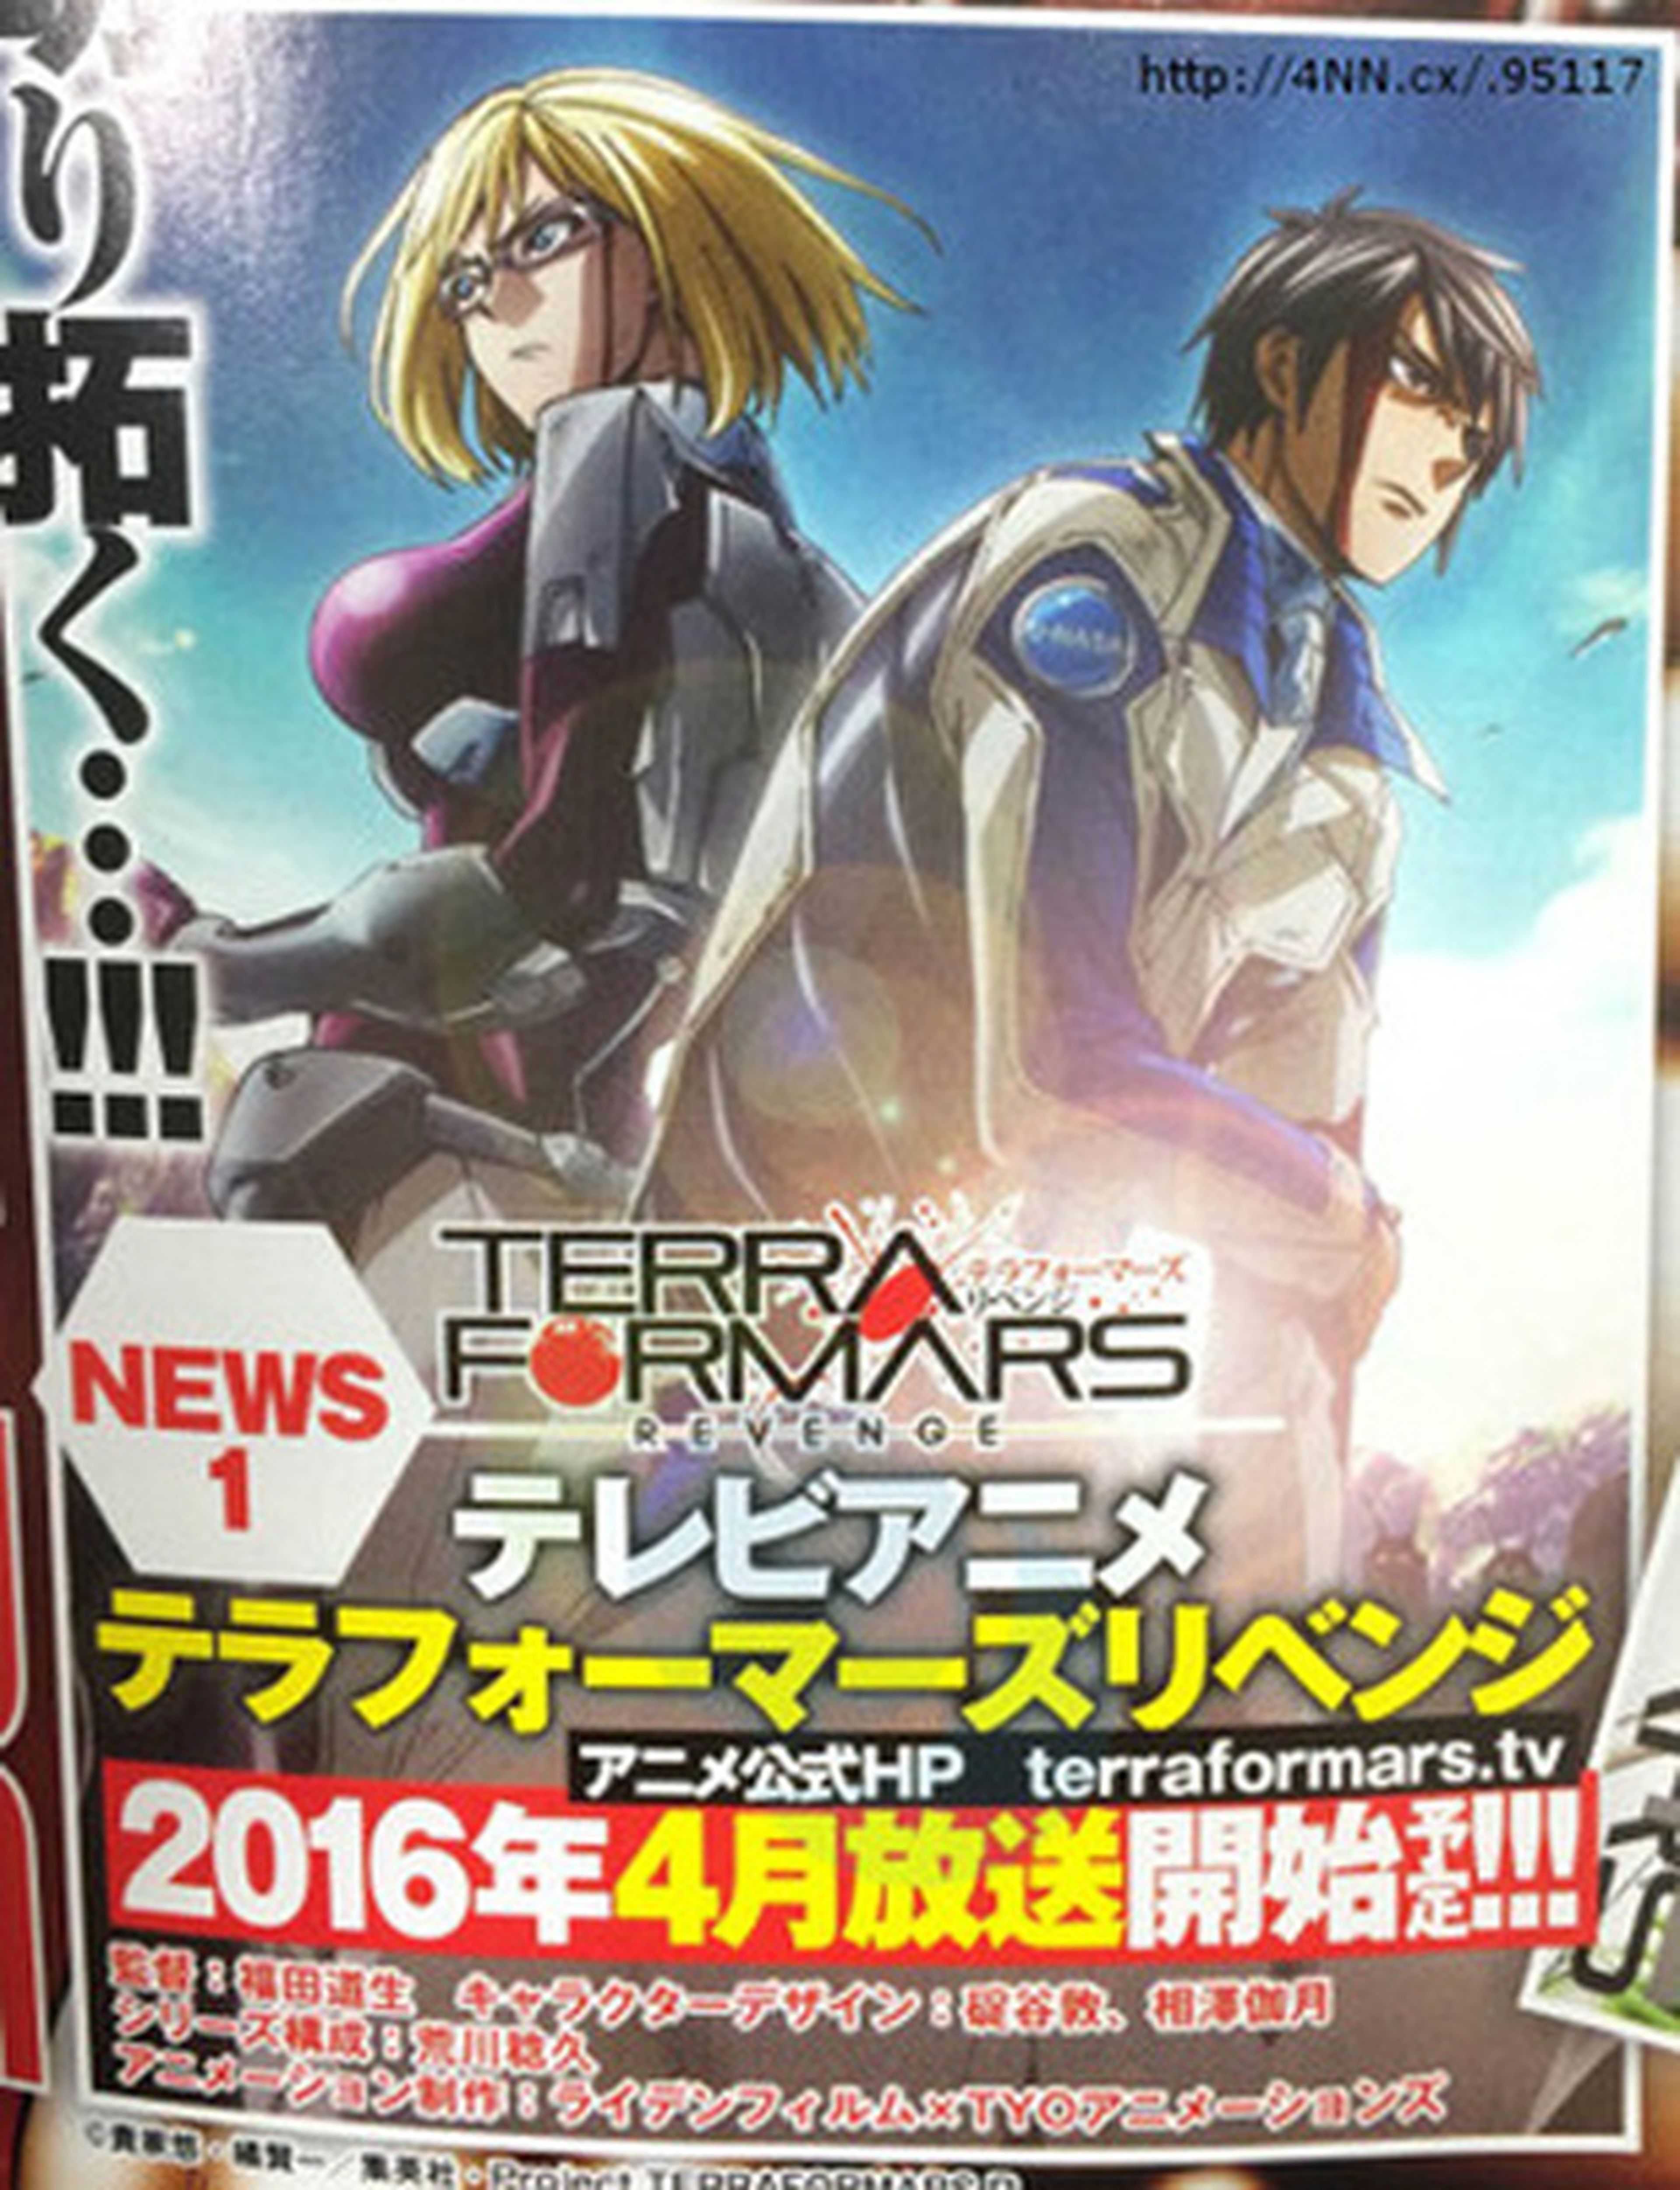 Terra Formars: la segunda temporada del anime se estrena en abril